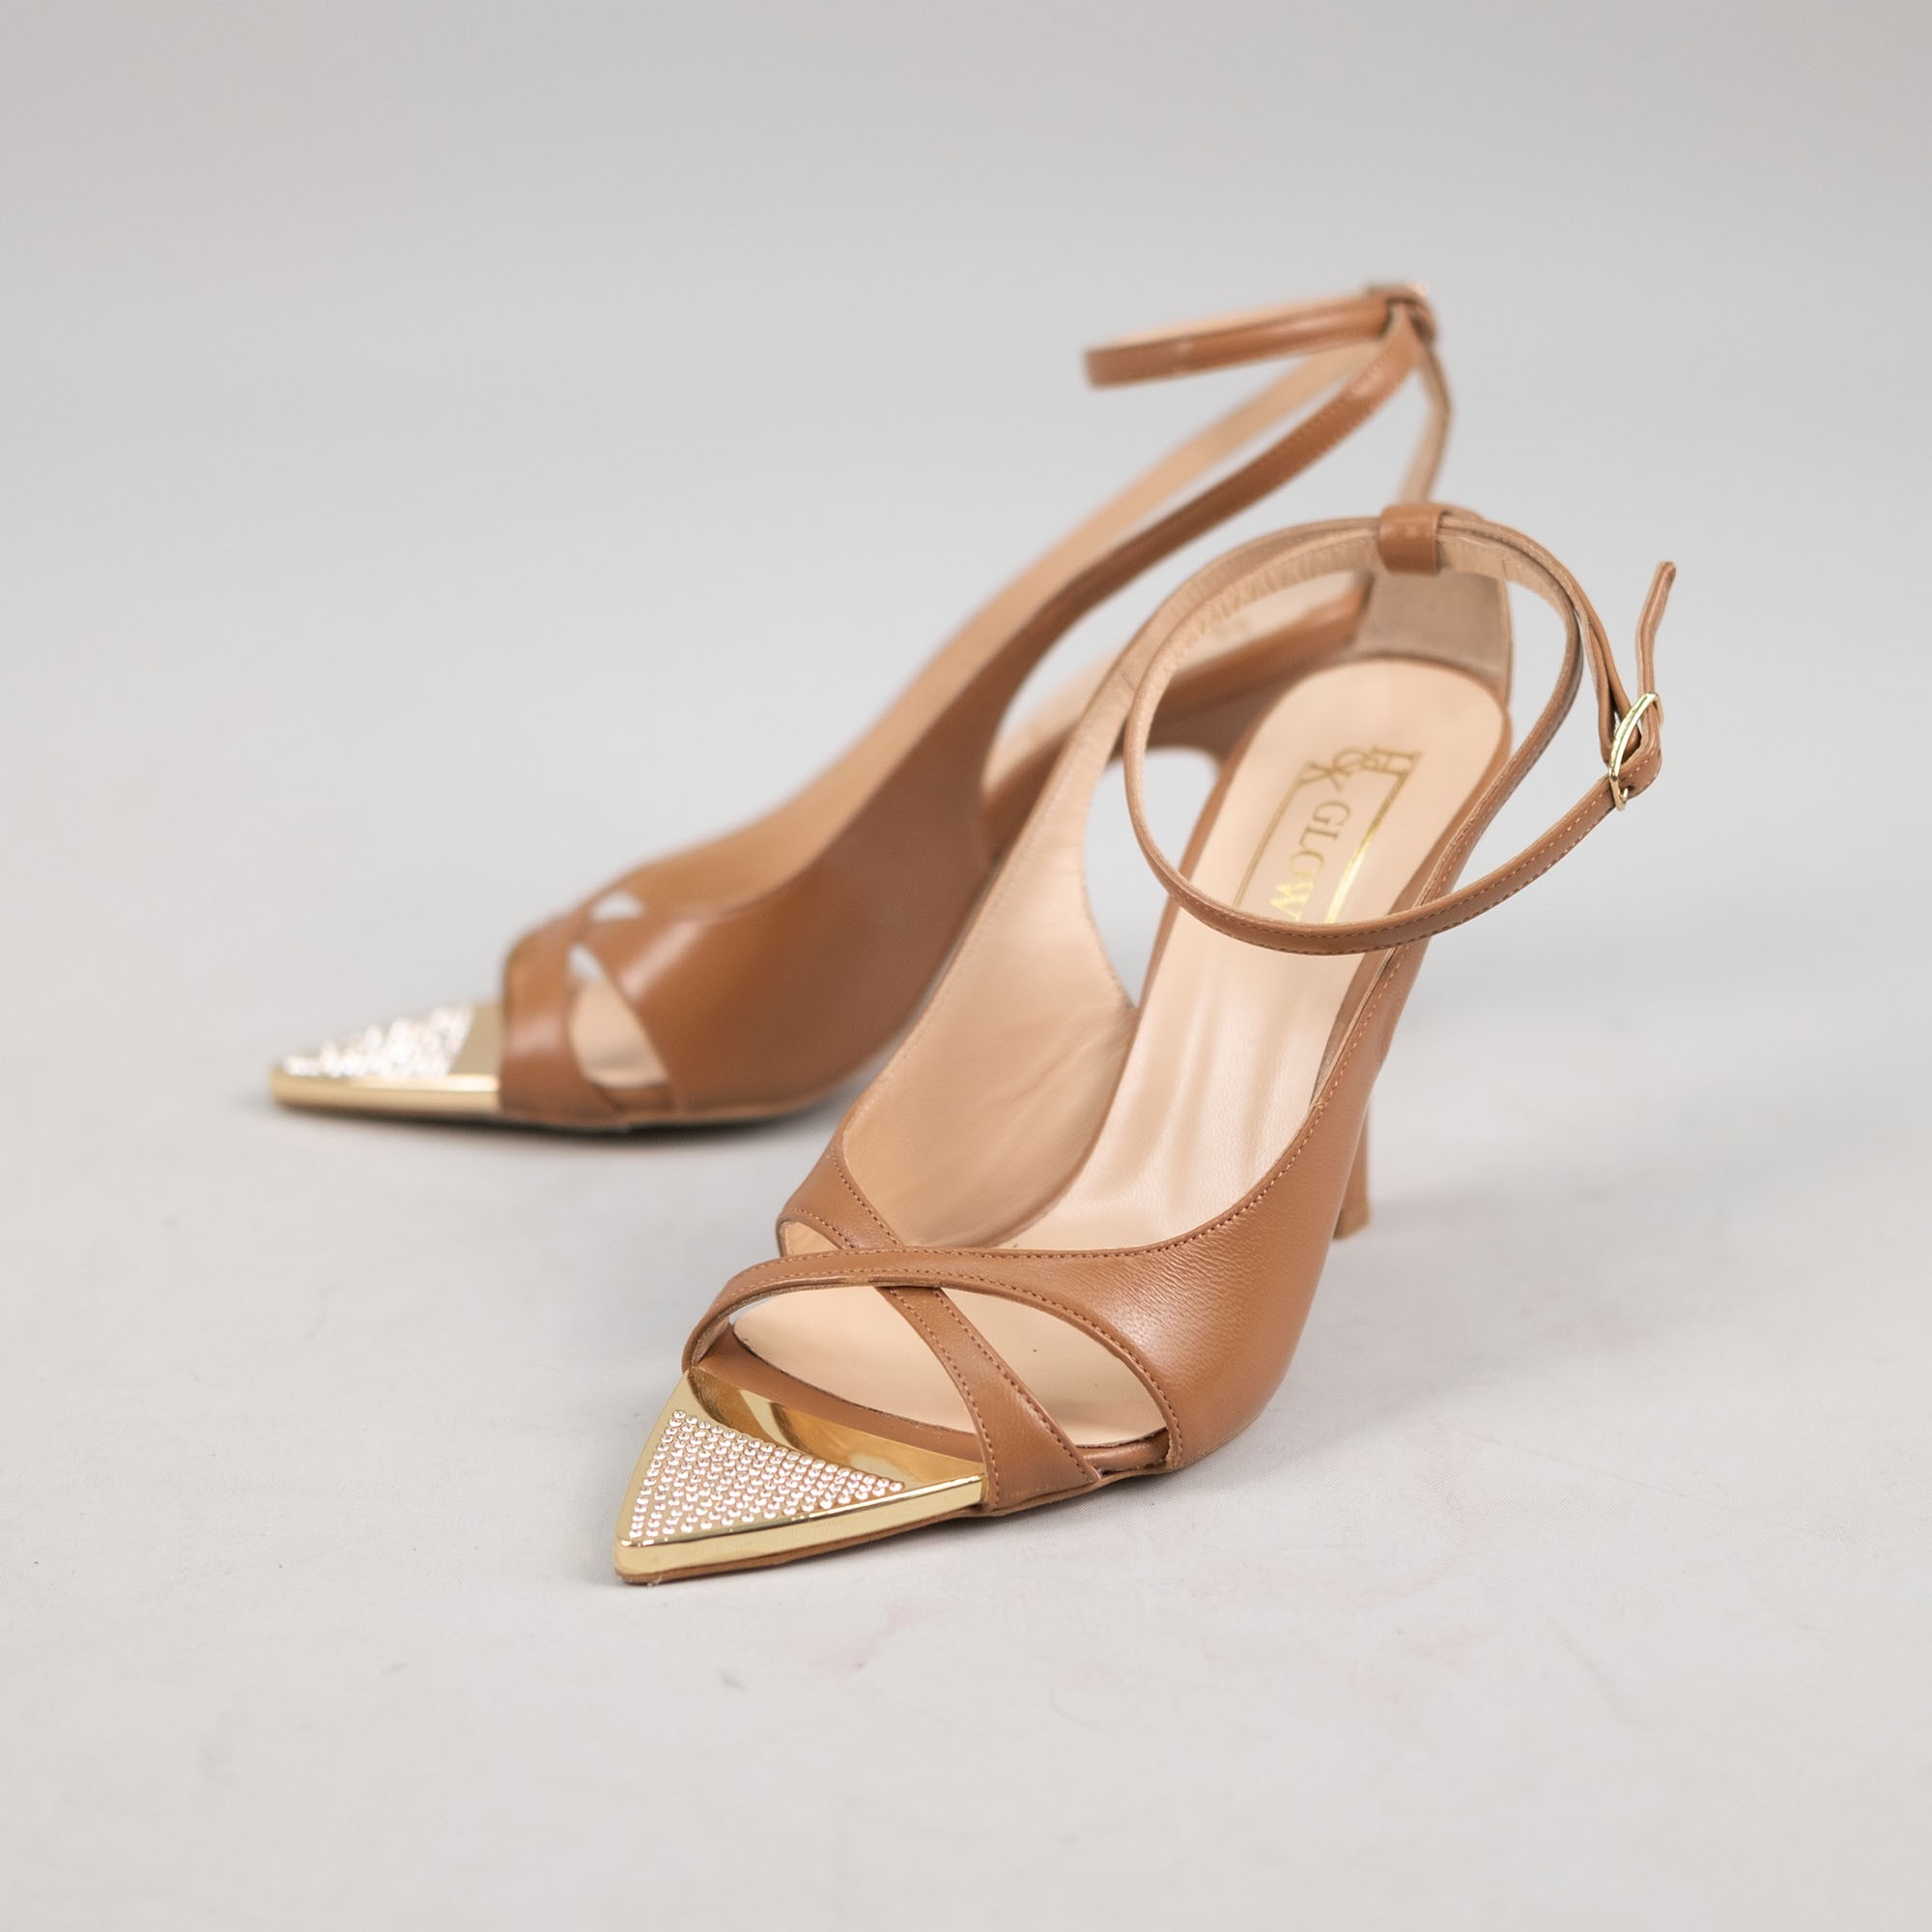 Gold Detaylı Topuklu Ayakkabı - Taba